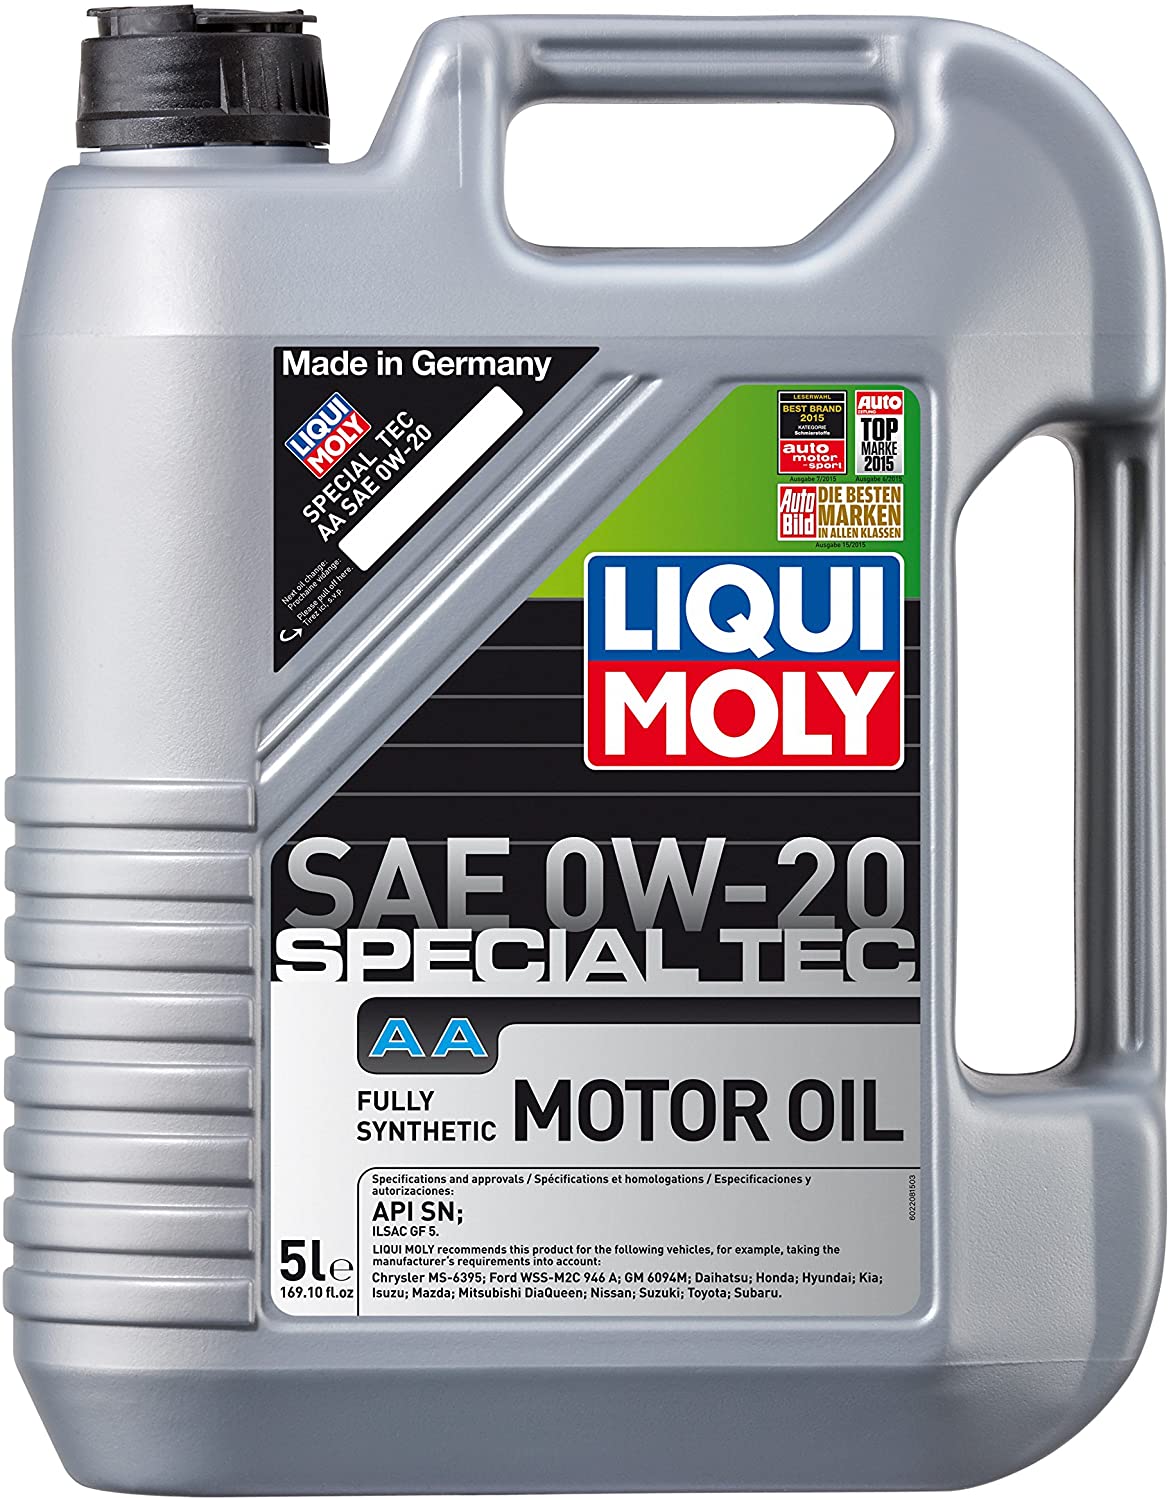 LIQUI MOLY Special Tec LR Motor Oil 0W-20 - 5L > 2to4wheels